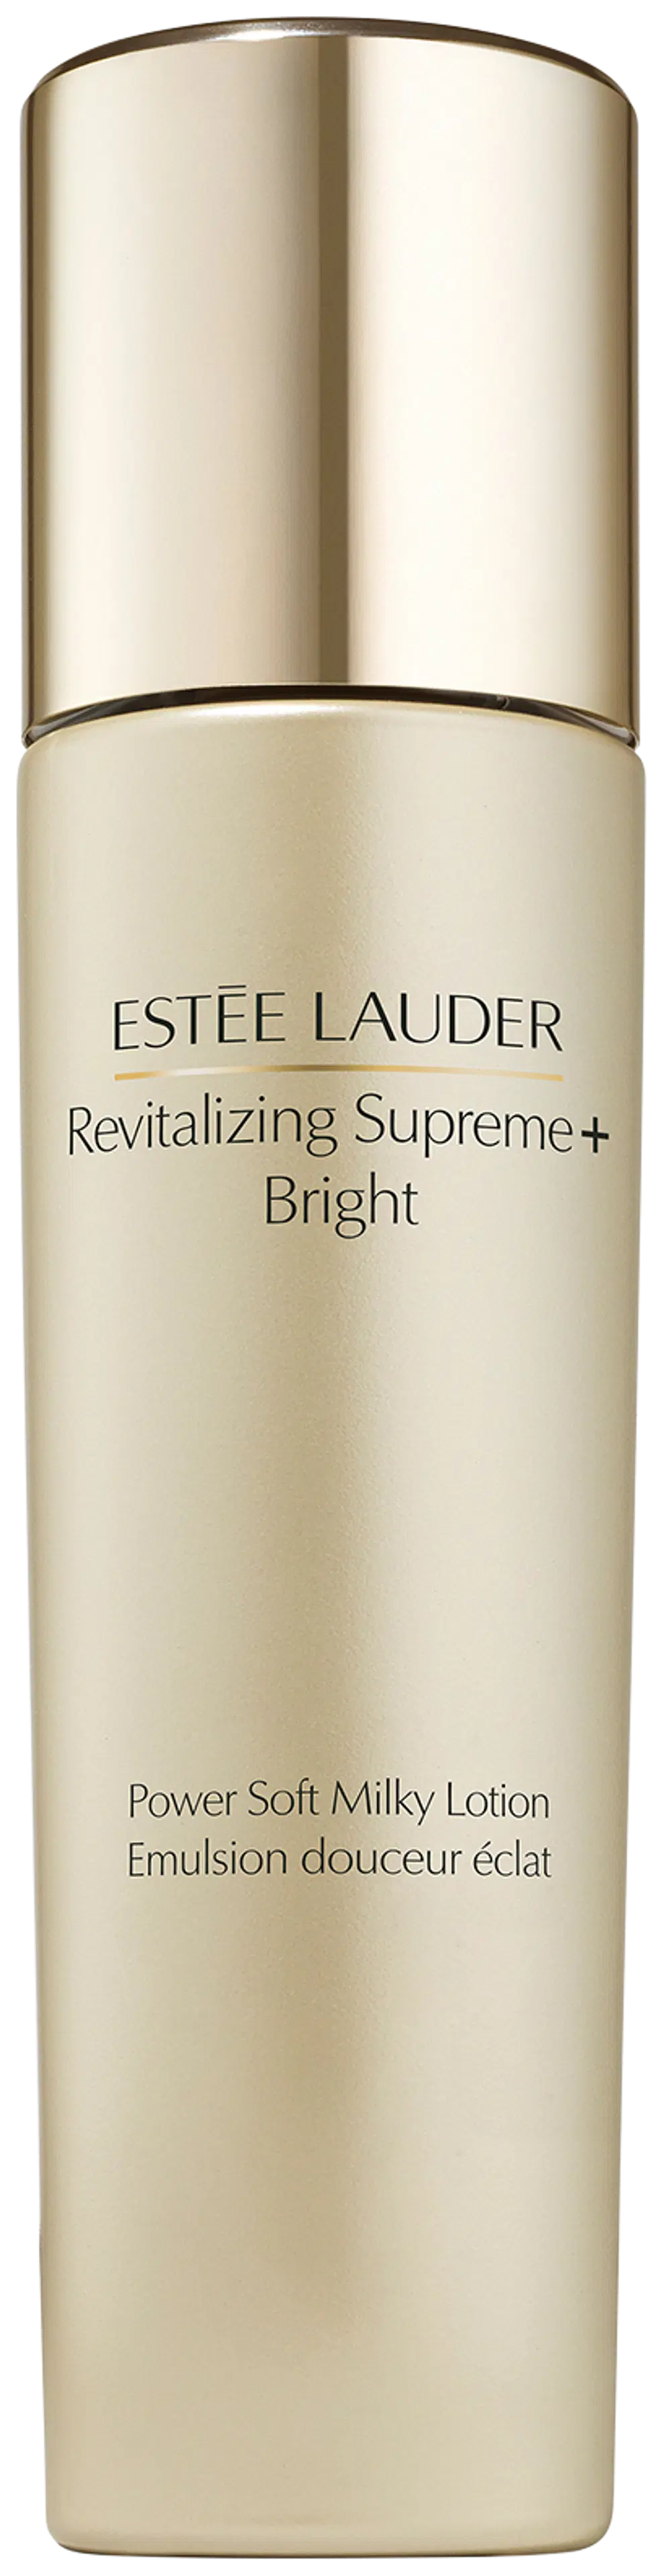 Estée Lauder Revitalizing Supreme+ Bright Power Soft Milky Lotion kosteusvoide 100 ml